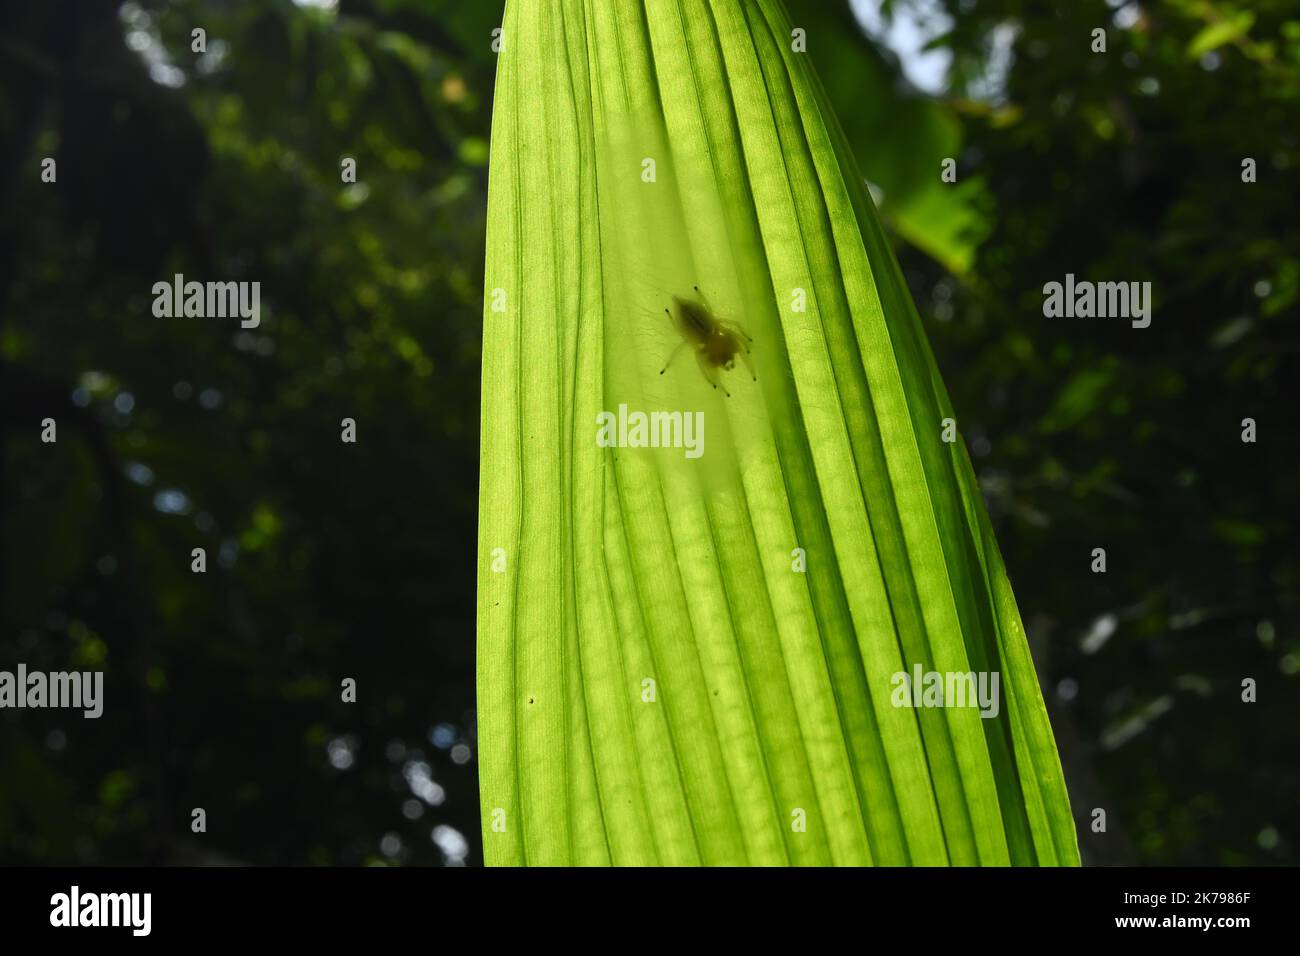 Un piccolo ragno si trova sullo spesso rete di ragno di seta o nido situato sotto una foglia verde di noce Areca alla luce diretta del sole, la foglia sotto la vista Foto Stock